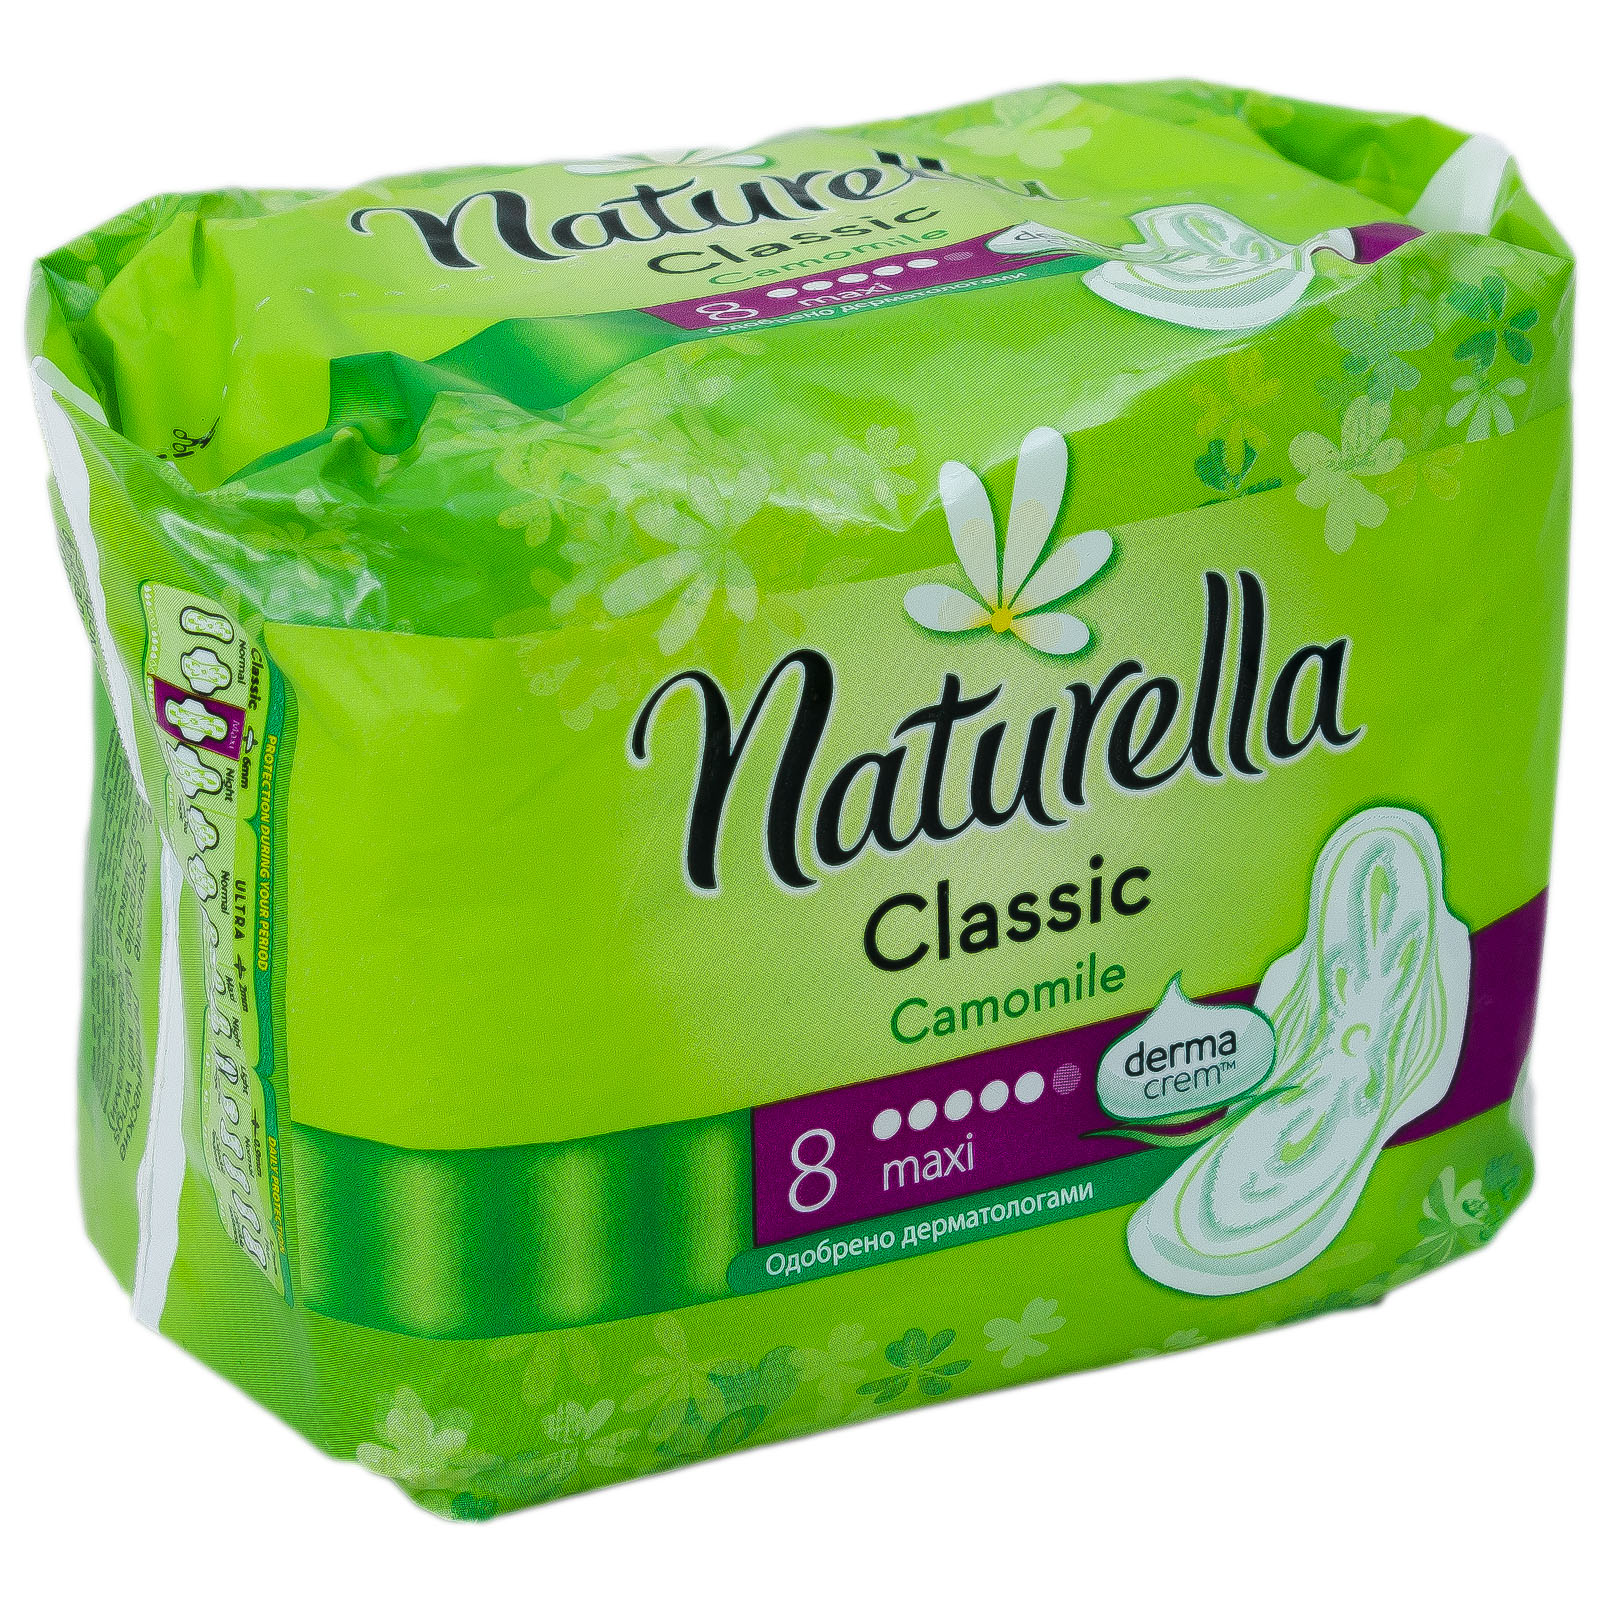   / Naturella  Classic Maxi 8 